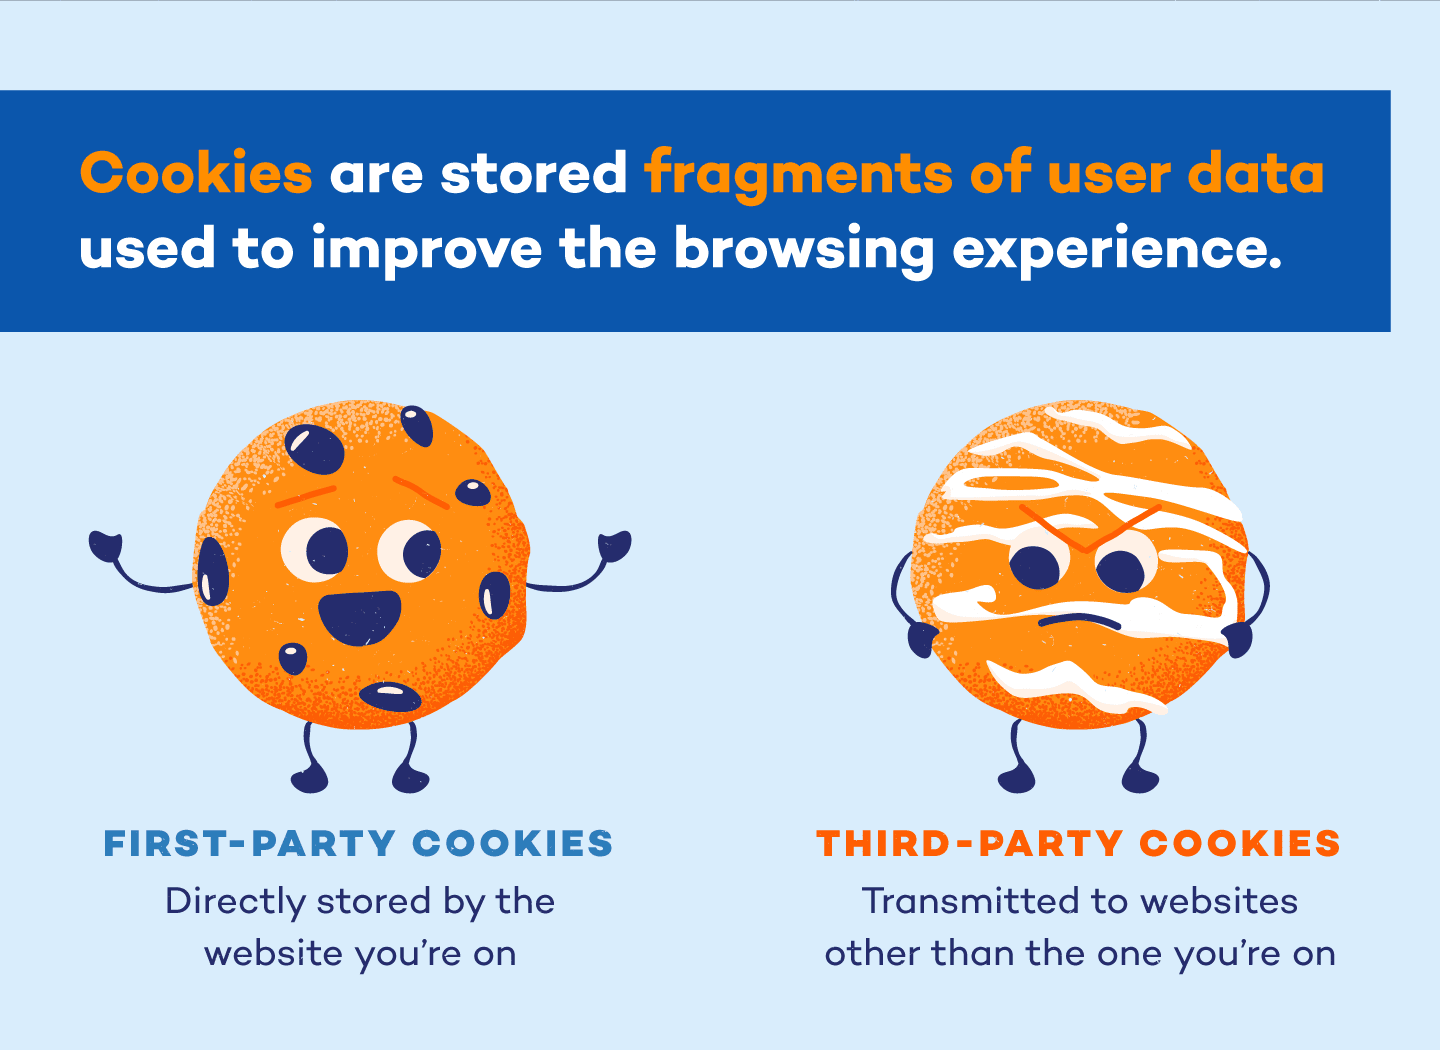 Ligesom deres bagte modstykker findes webcookies i flere varianter 